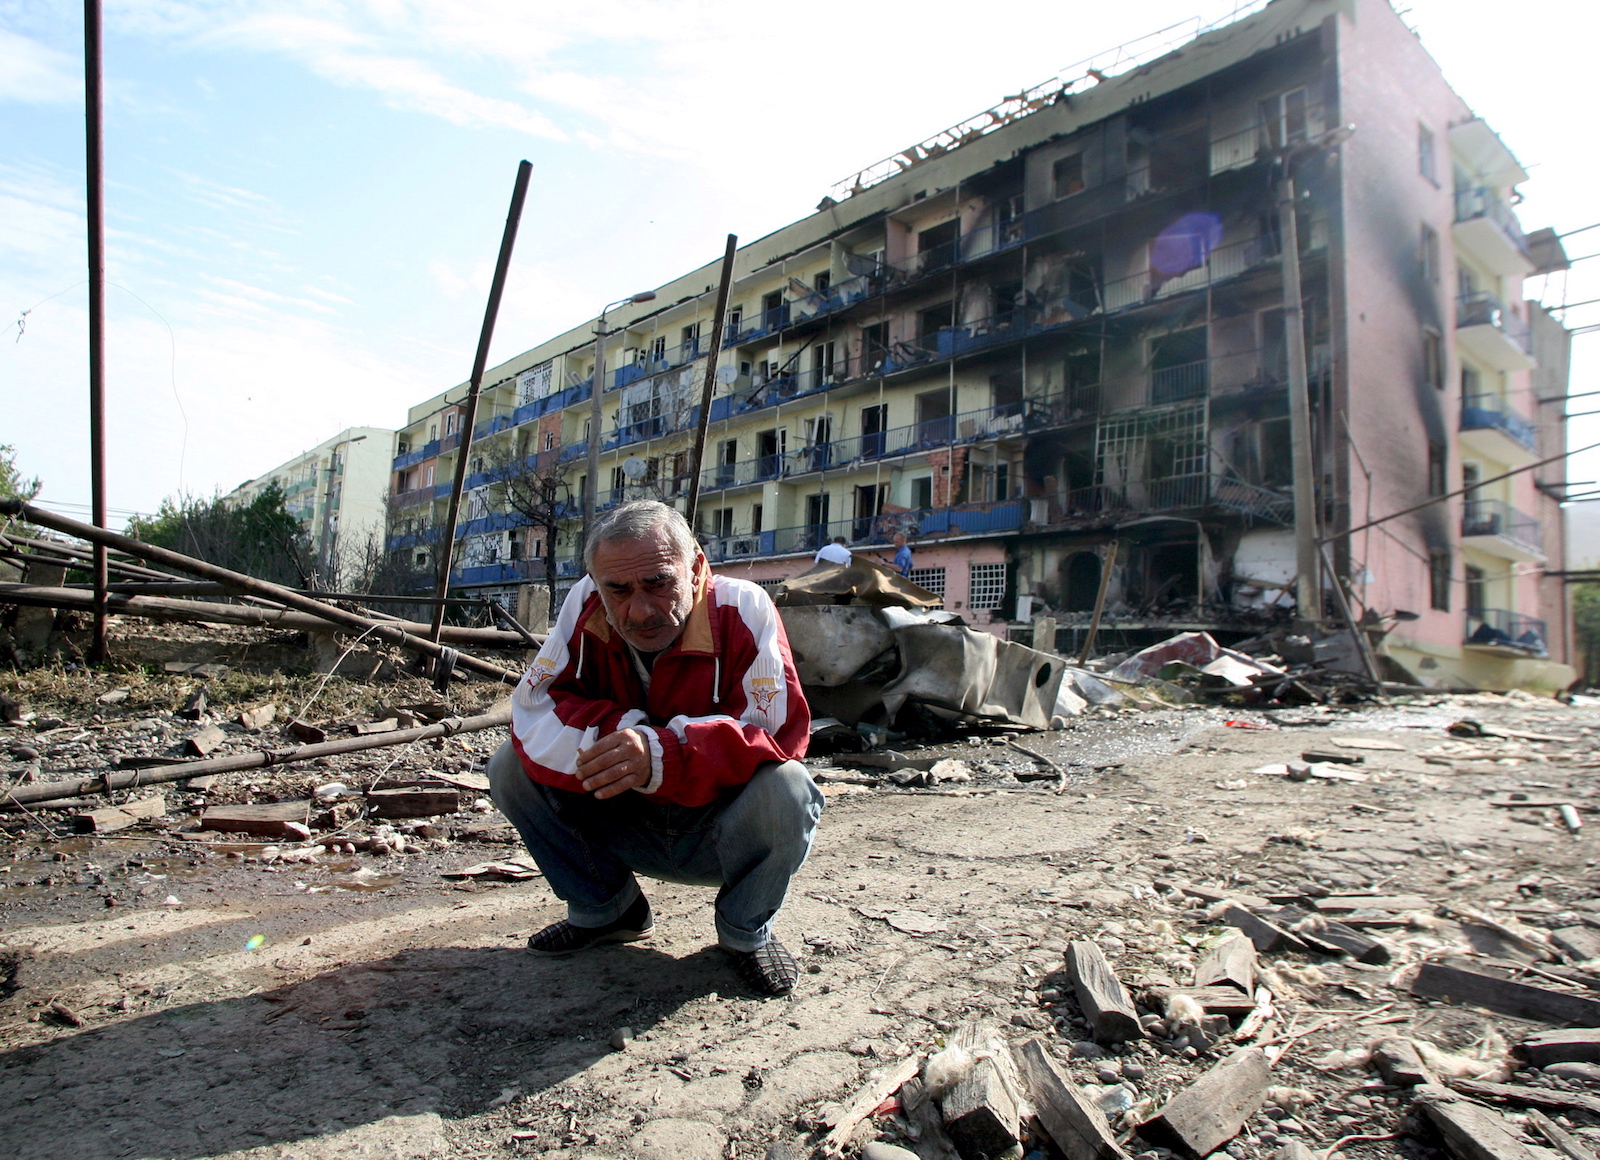 კადრში ჩანს გორელი კაცი. ფონზე დაბომბვის შედეგად დაზიანებული შენობა © EPA/ZURAB KURTSIKIDZE